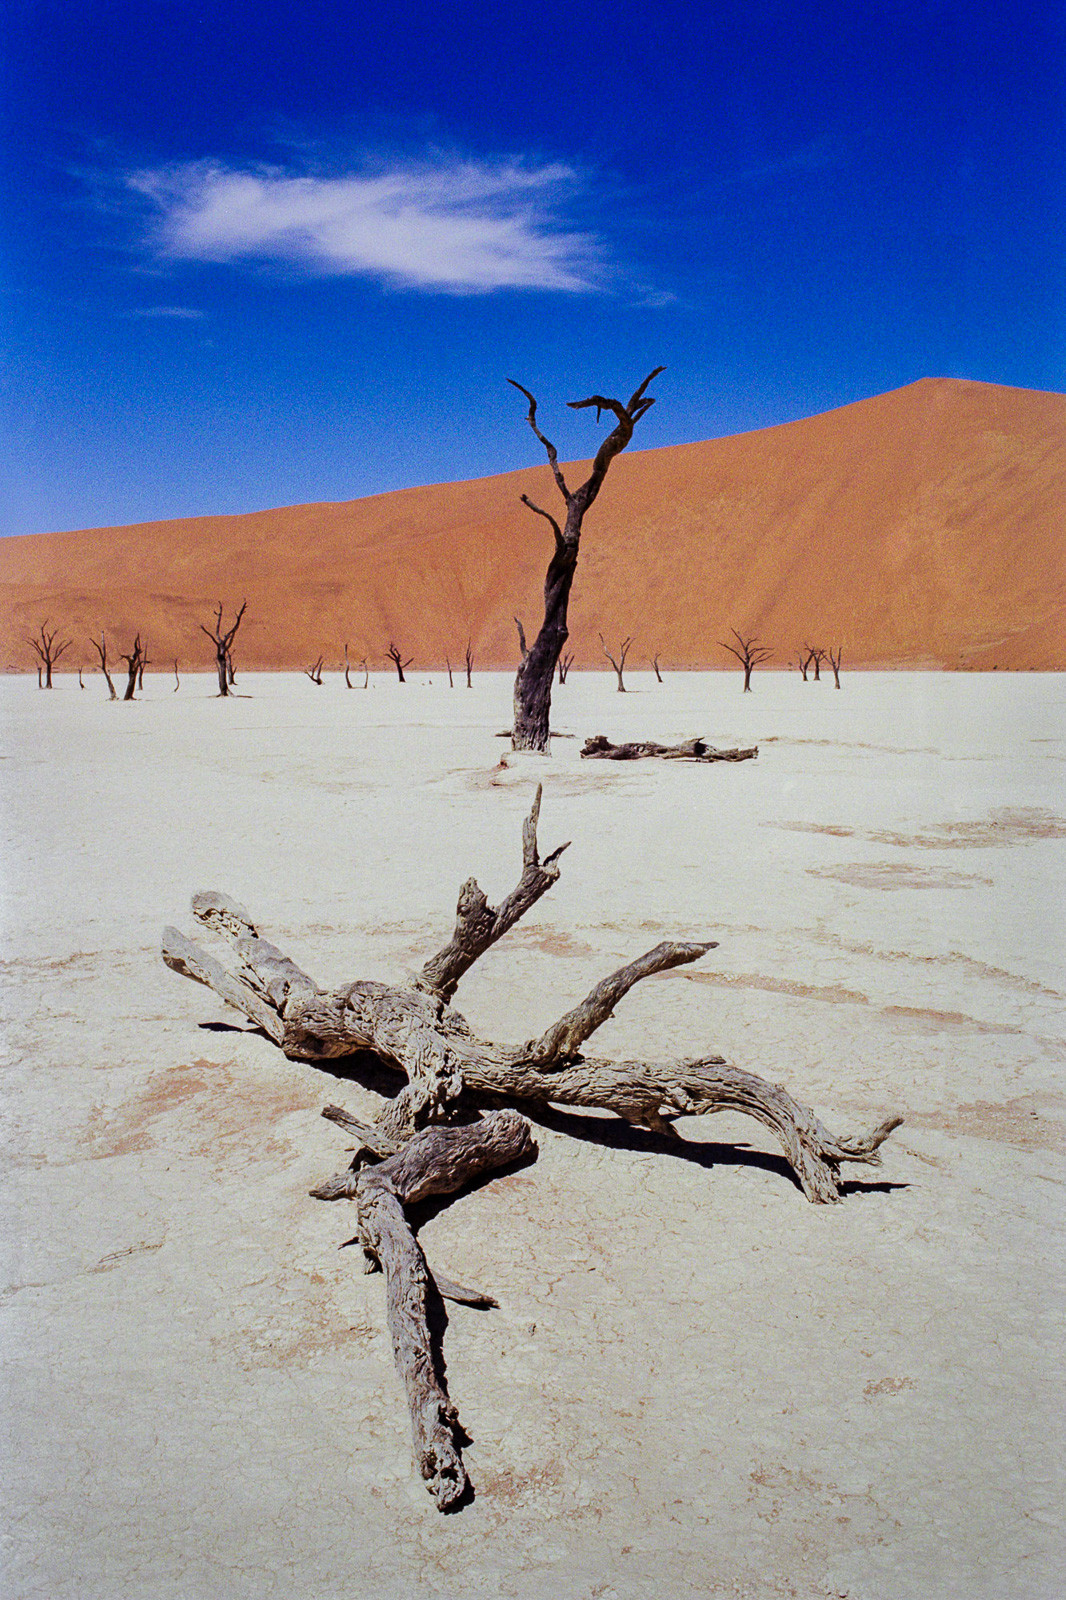 namibia desert scene in deadvlei dead trees in salt pan